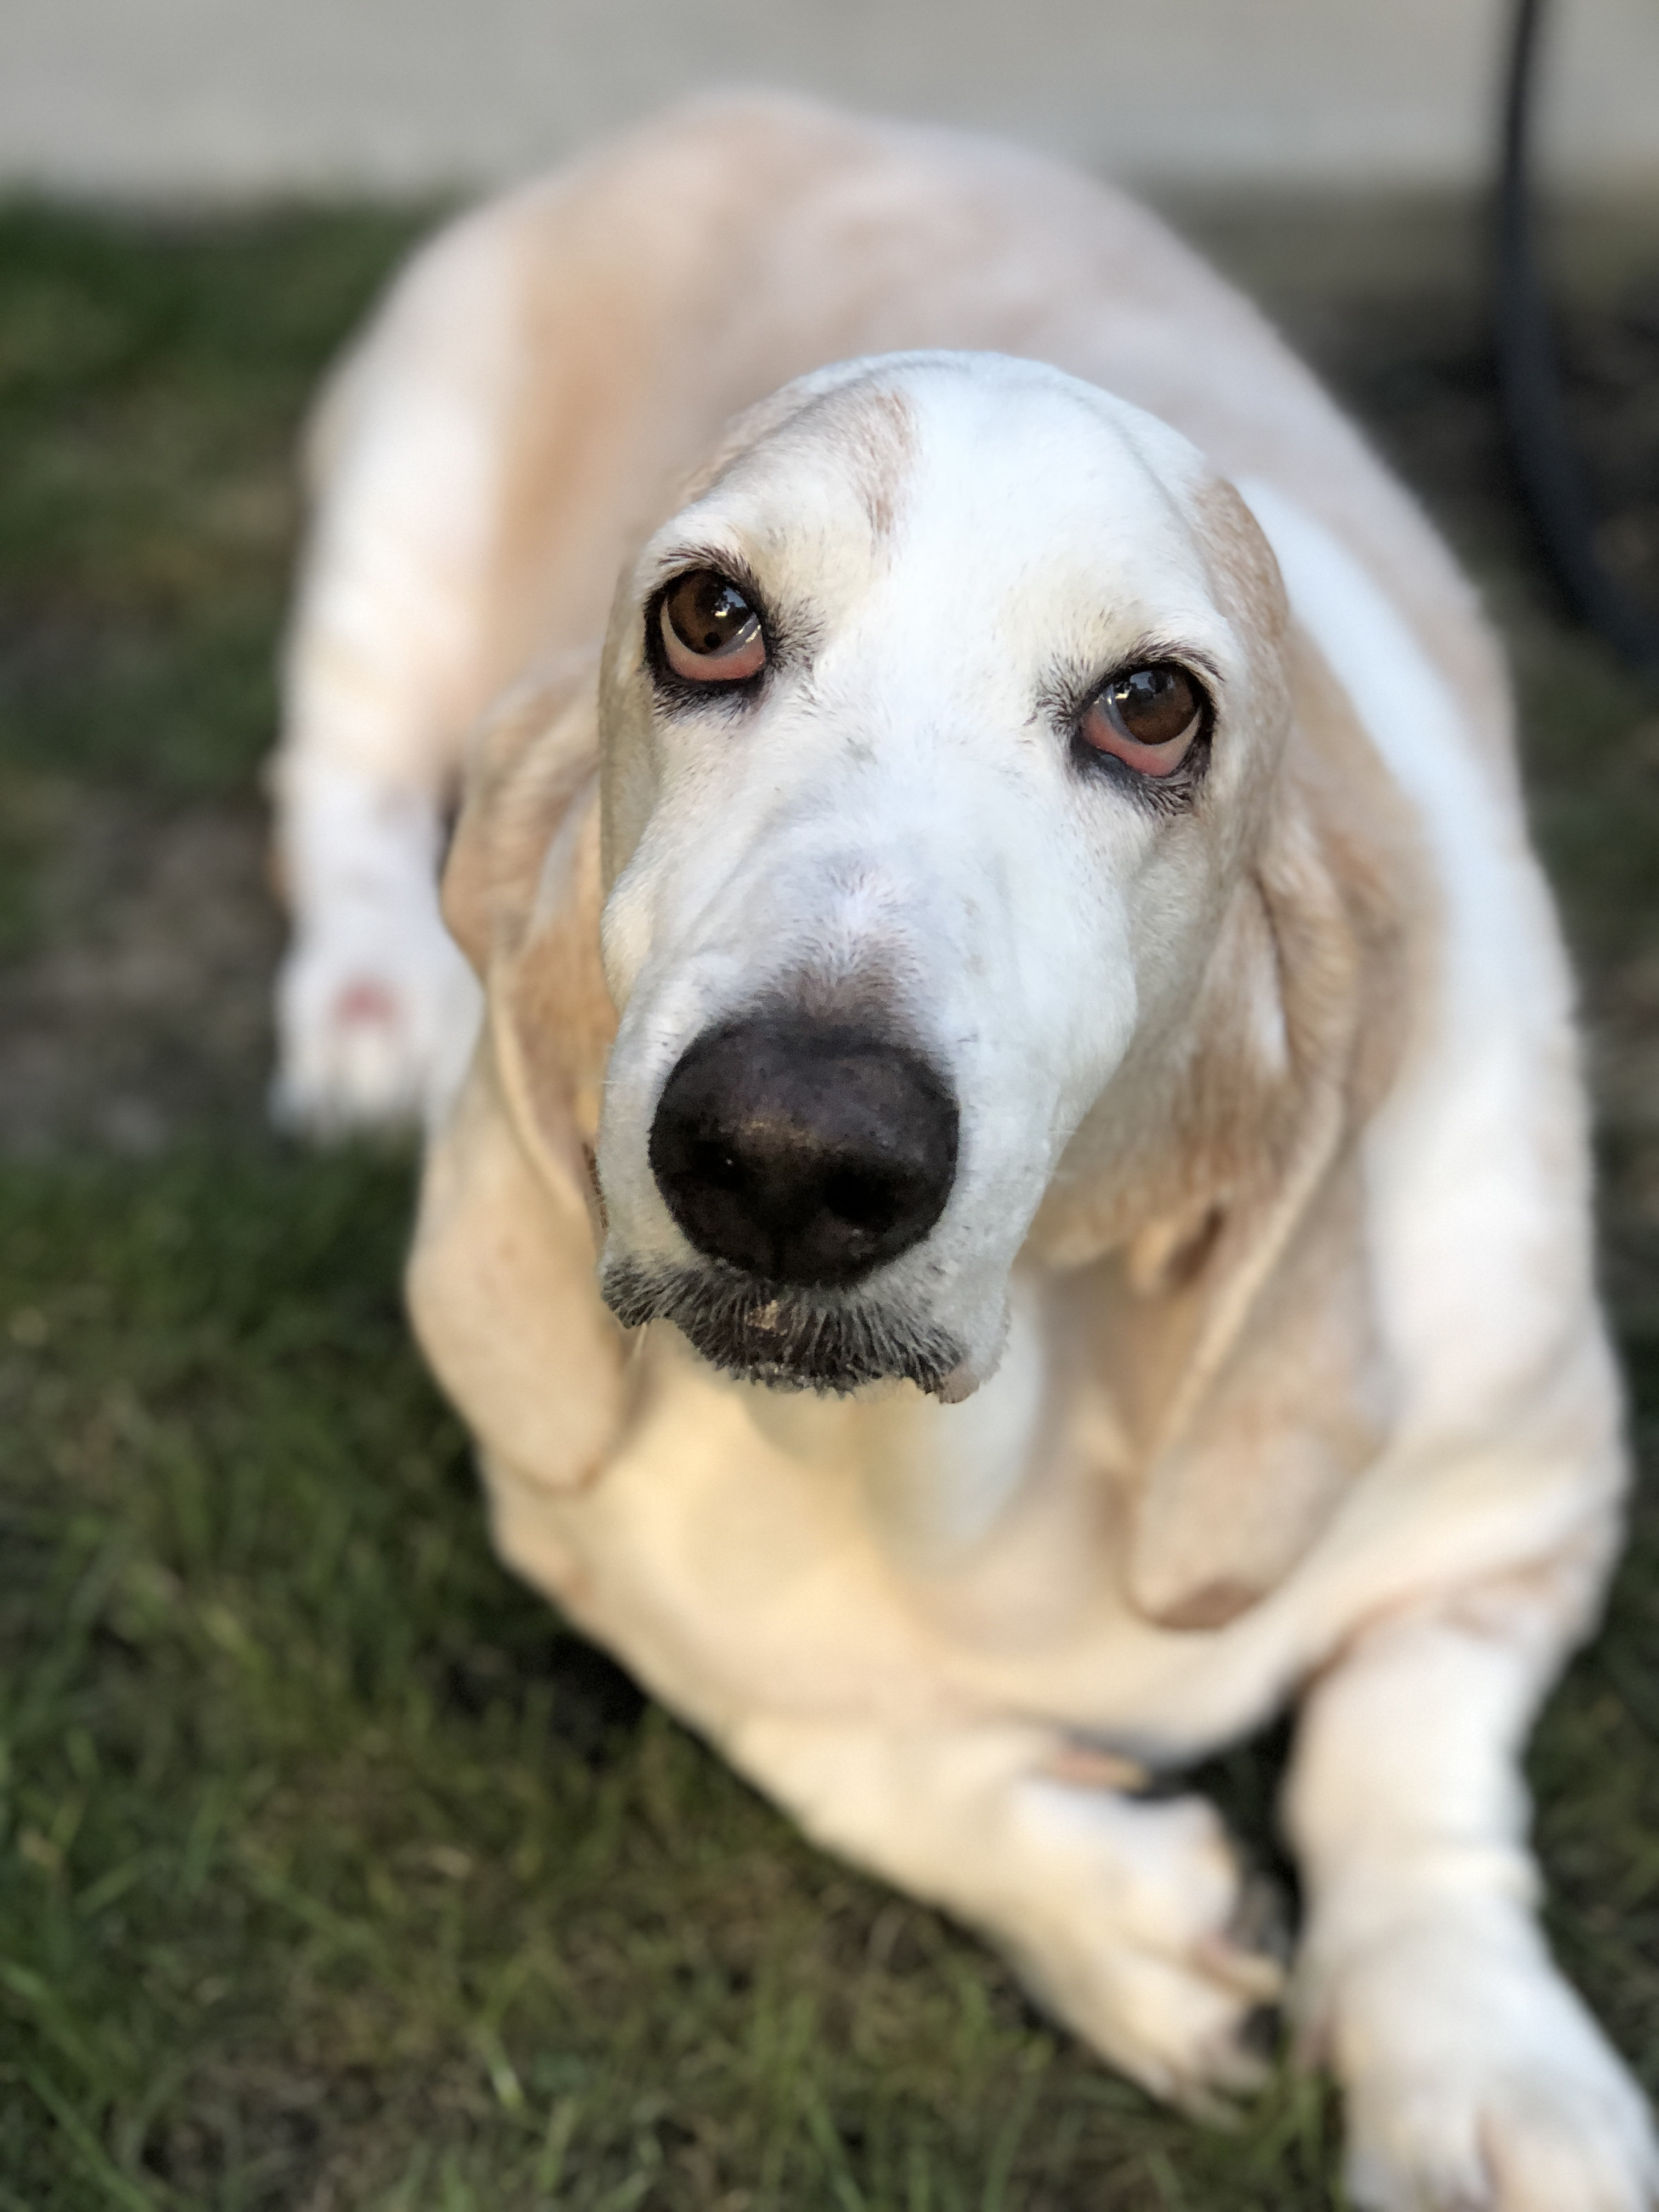 basset hound picture